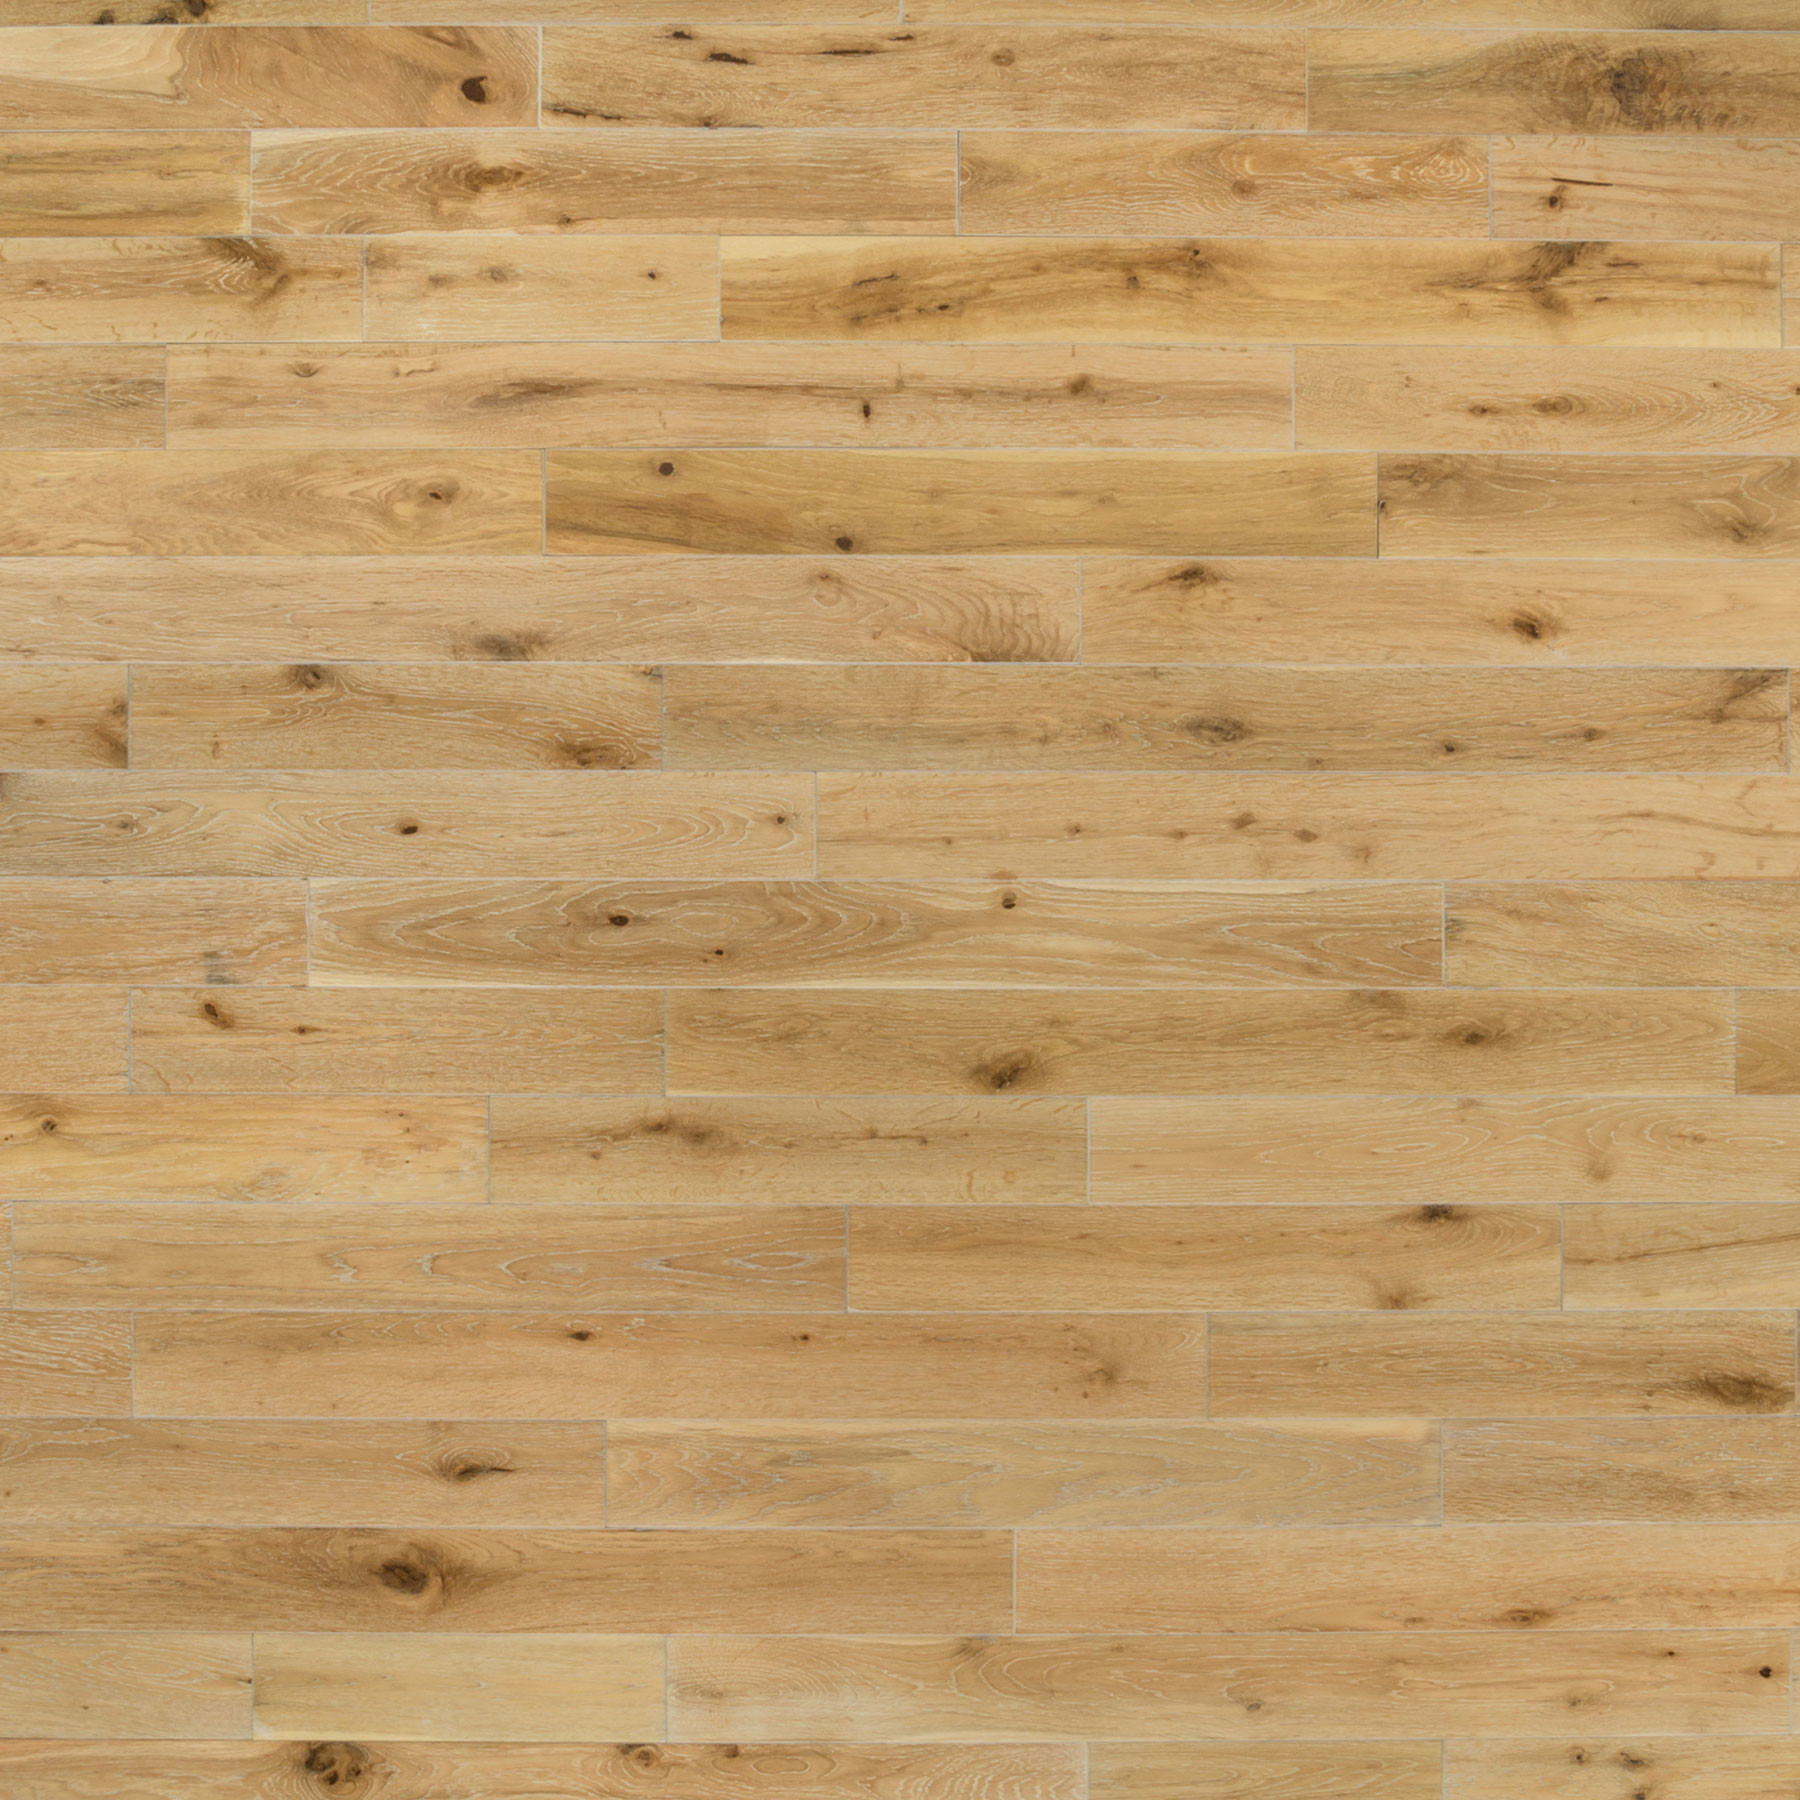 11 Stunning Hardwood Flooring Stores Chicago 2024 free download hardwood flooring stores chicago of harbor oak 3 1 2e280b3 white oak white washed etx surfaces pertaining to etx